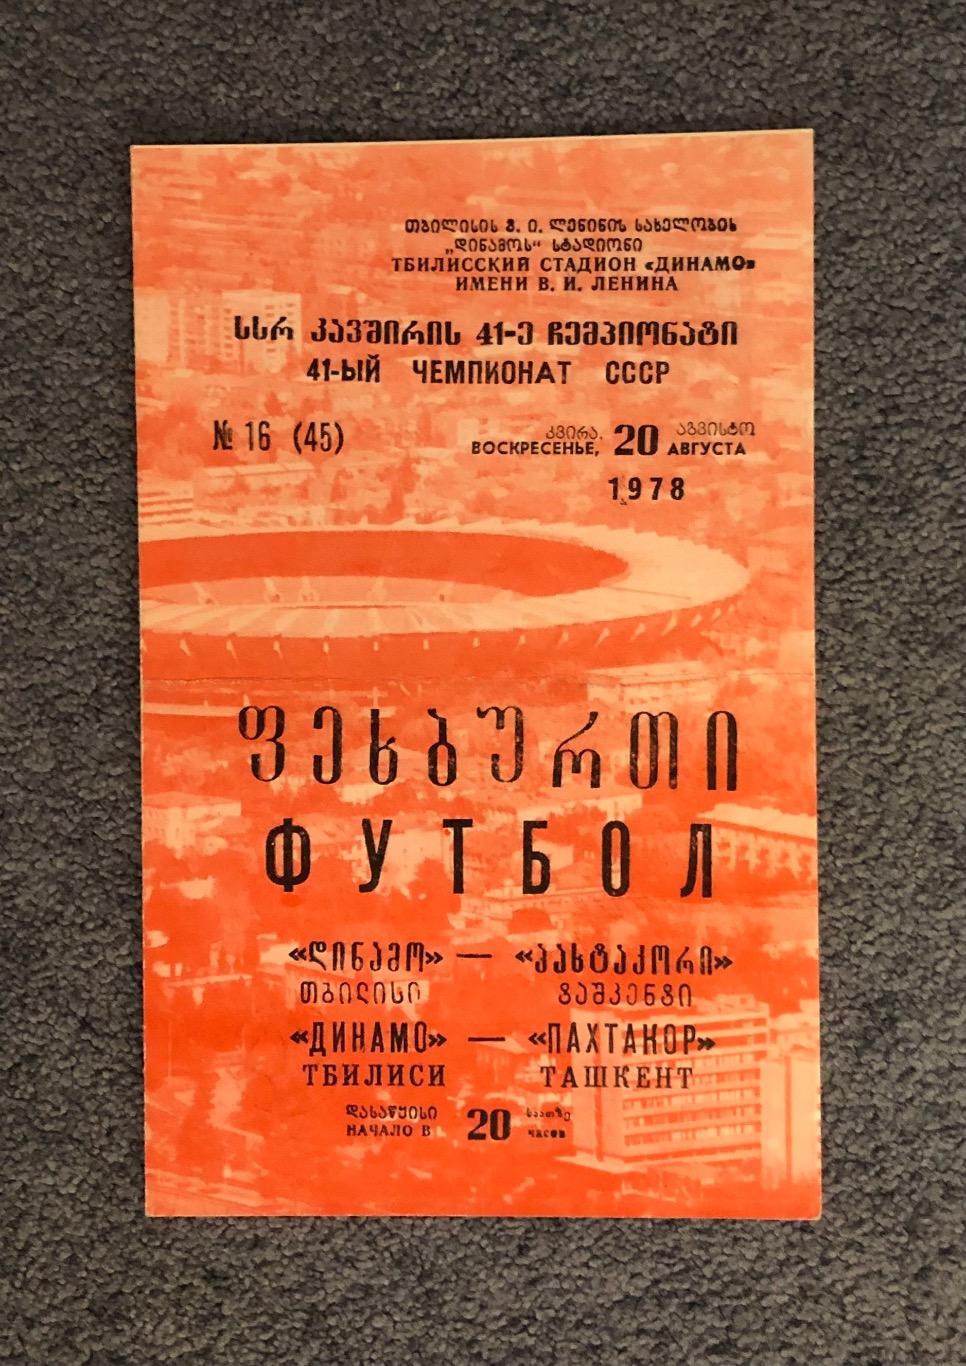 Динамо Тбилиси - Пахтакор Ташкент, 20.08.1978